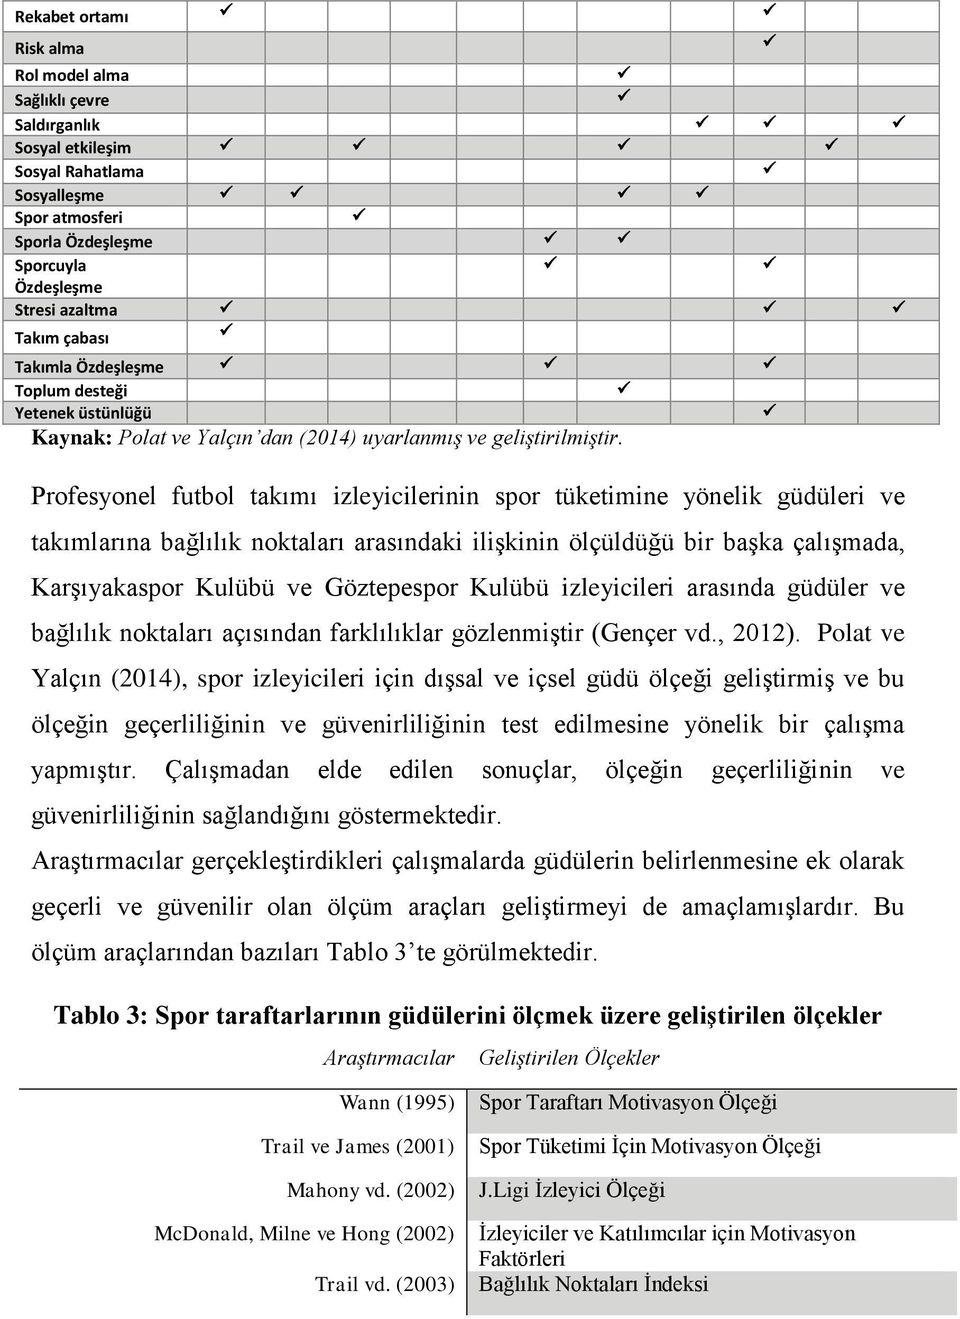 Profesyonel futbol takımı izleyicilerinin spor tüketimine yönelik güdüleri ve takımlarına bağlılık noktaları arasındaki ilişkinin ölçüldüğü bir başka çalışmada, Karşıyakaspor Kulübü ve Göztepespor